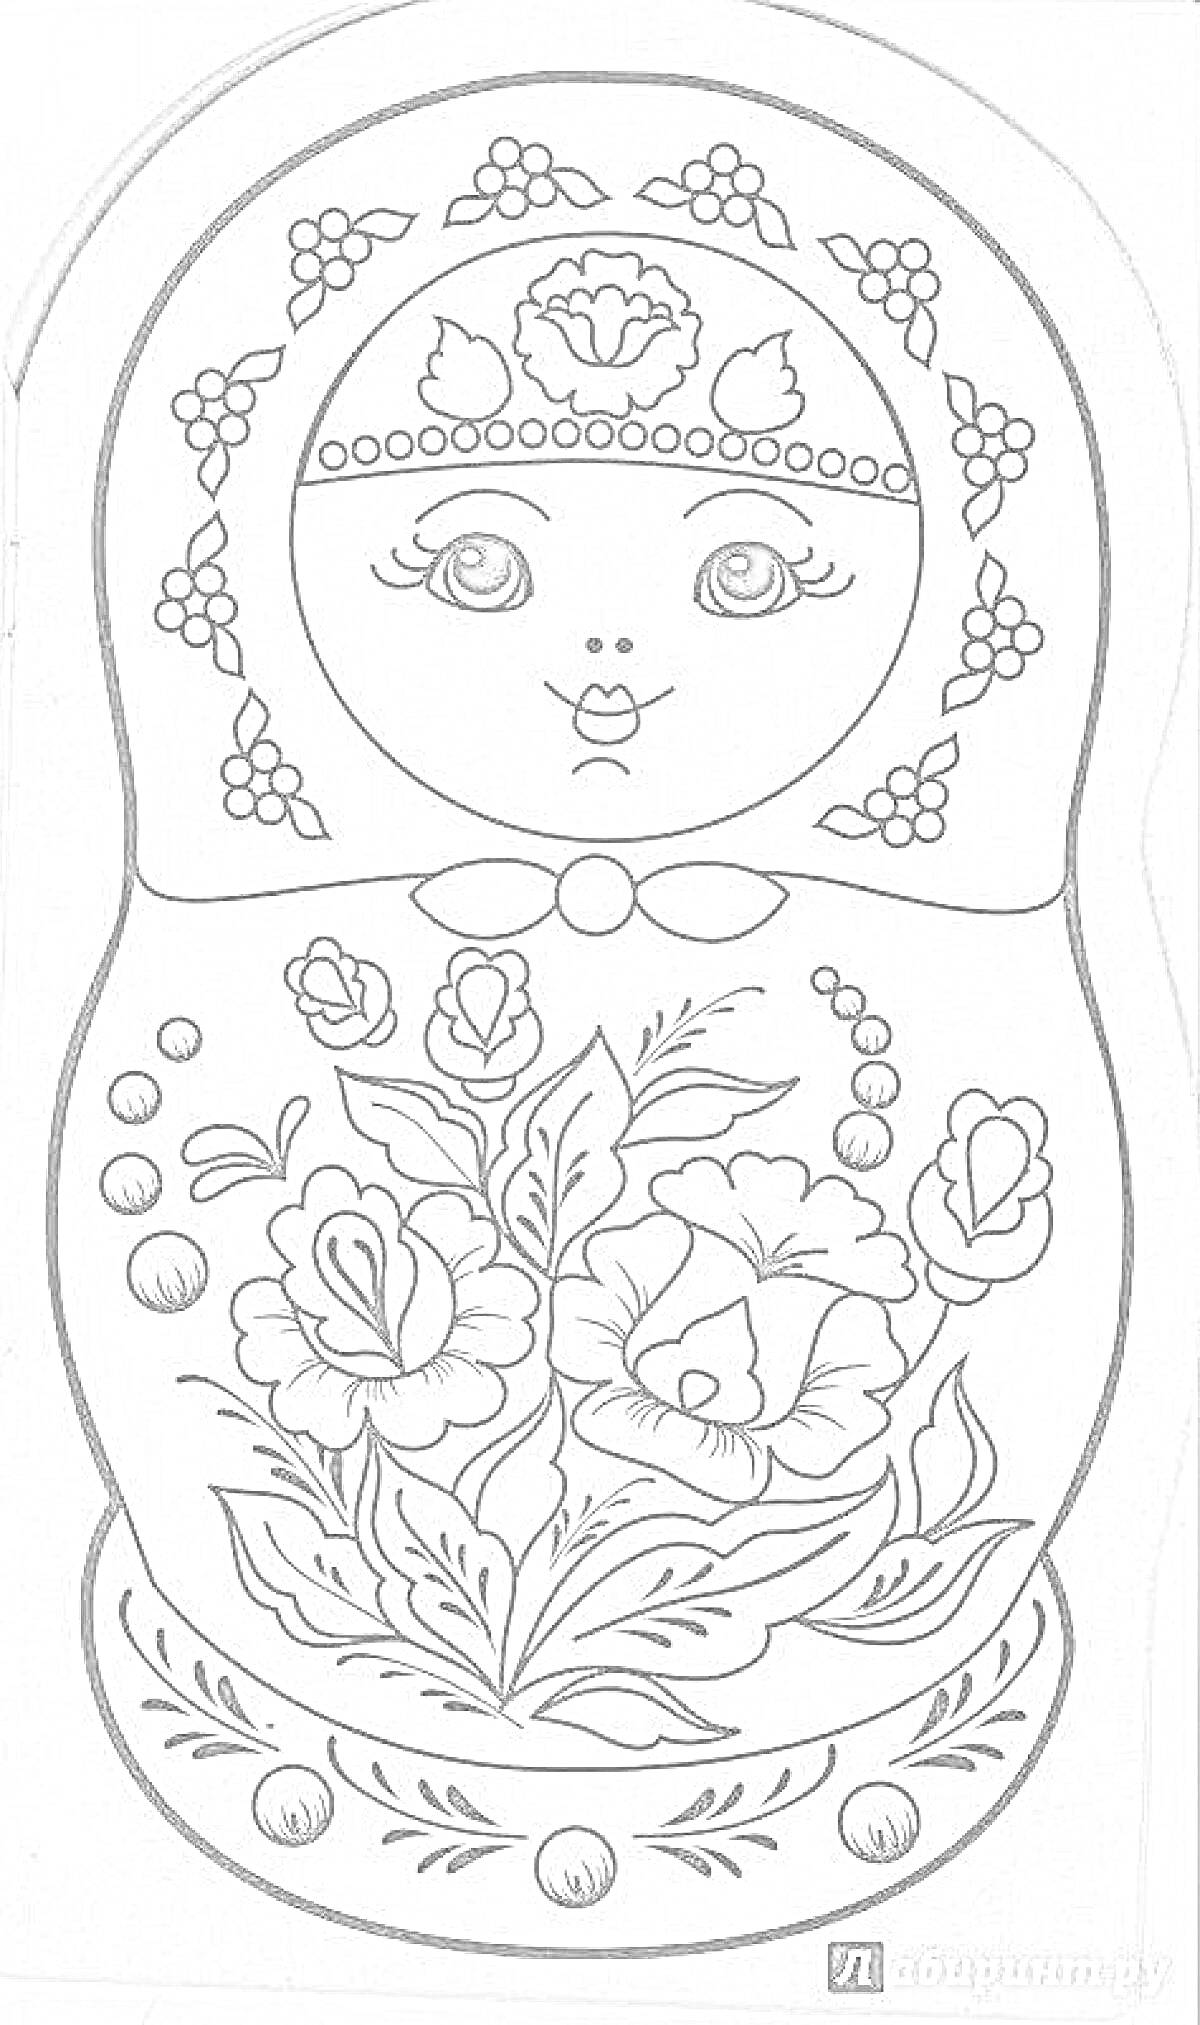 Раскраска Матрешка с городецкой росписью (цветы на юбке и узоры на косынке), элементы: лицо с головным убором, завязанный бант, узоры кустарникового типа на косынке, крупные цветы с листьями на юбке